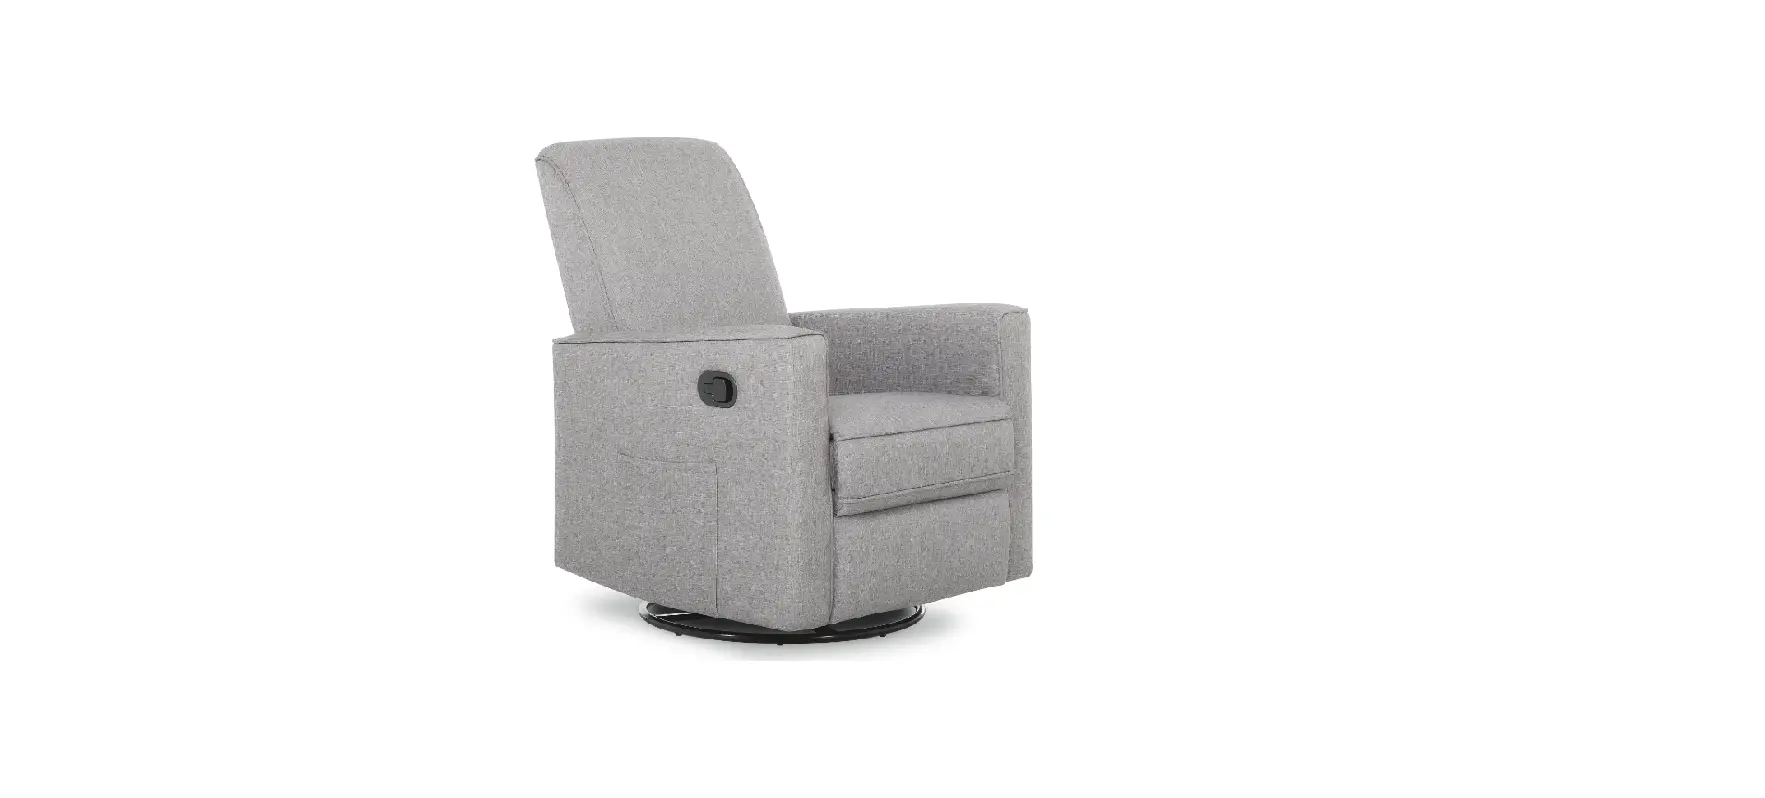 610 Upholstered Swivel Glider Chair